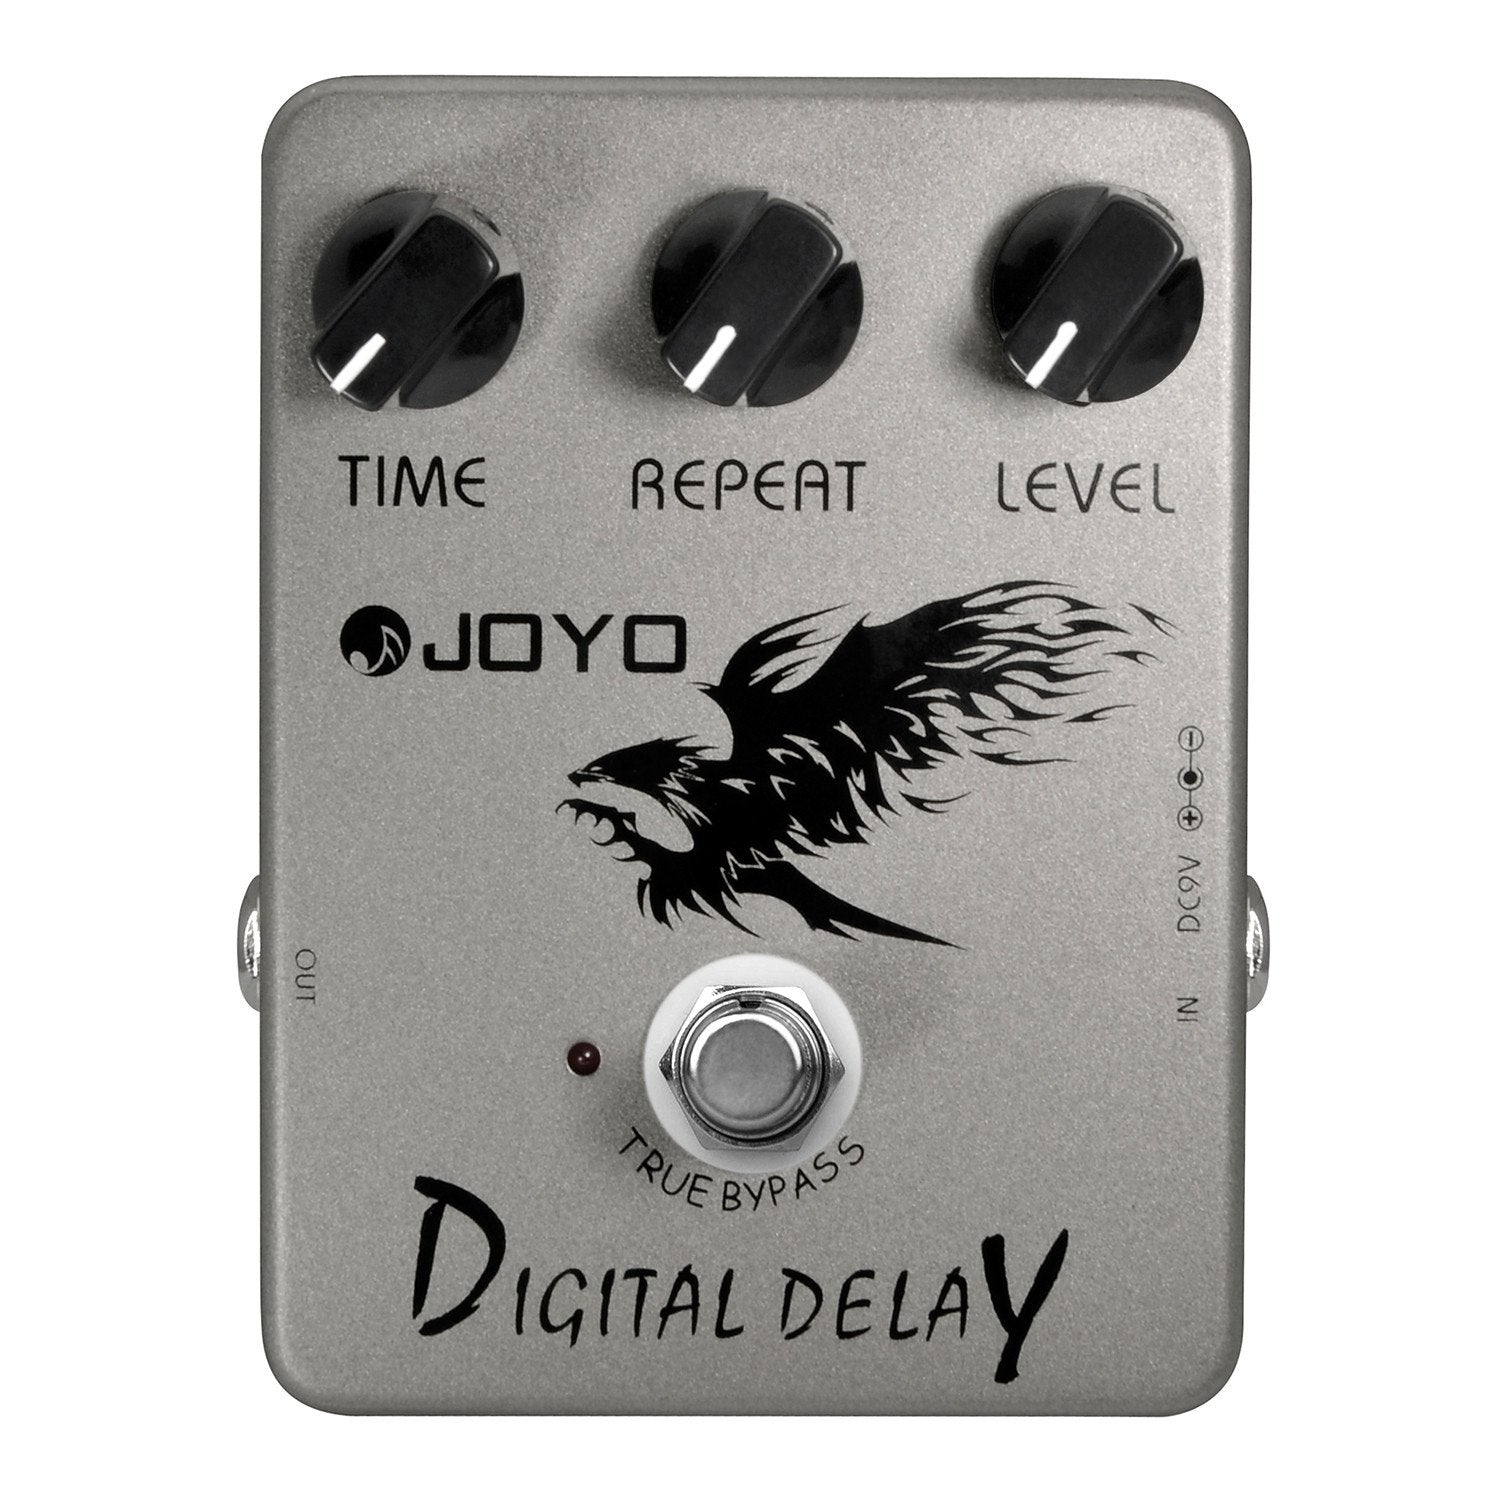 JOYO JF-08 DIGITAL DELAY, JOYO, EFFECTS, joyo-digital-delay-effect-pedal, ZOSO MUSIC SDN BHD